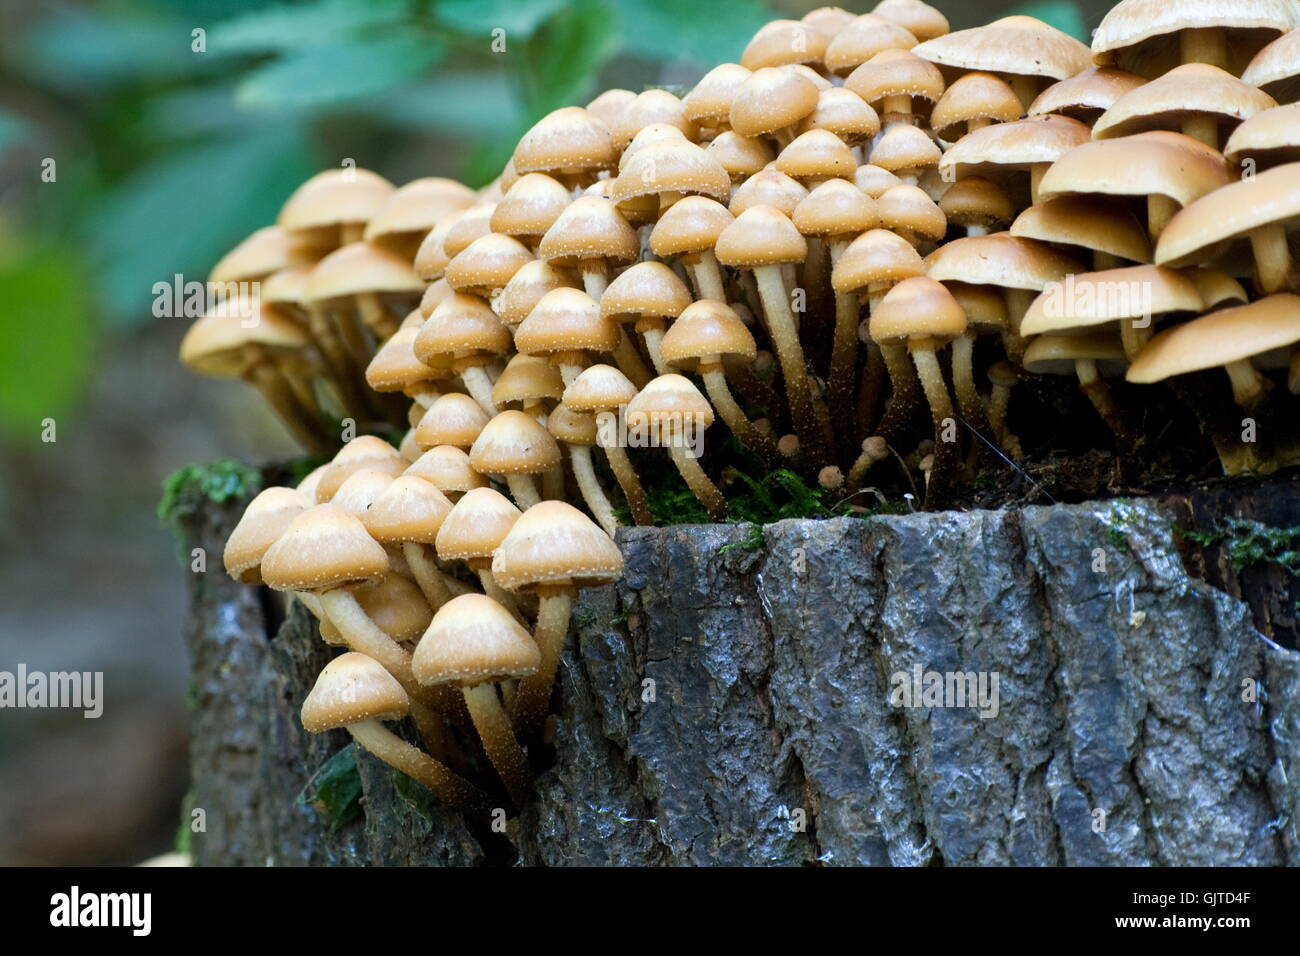 mushrooms macro close-up Stock Photo